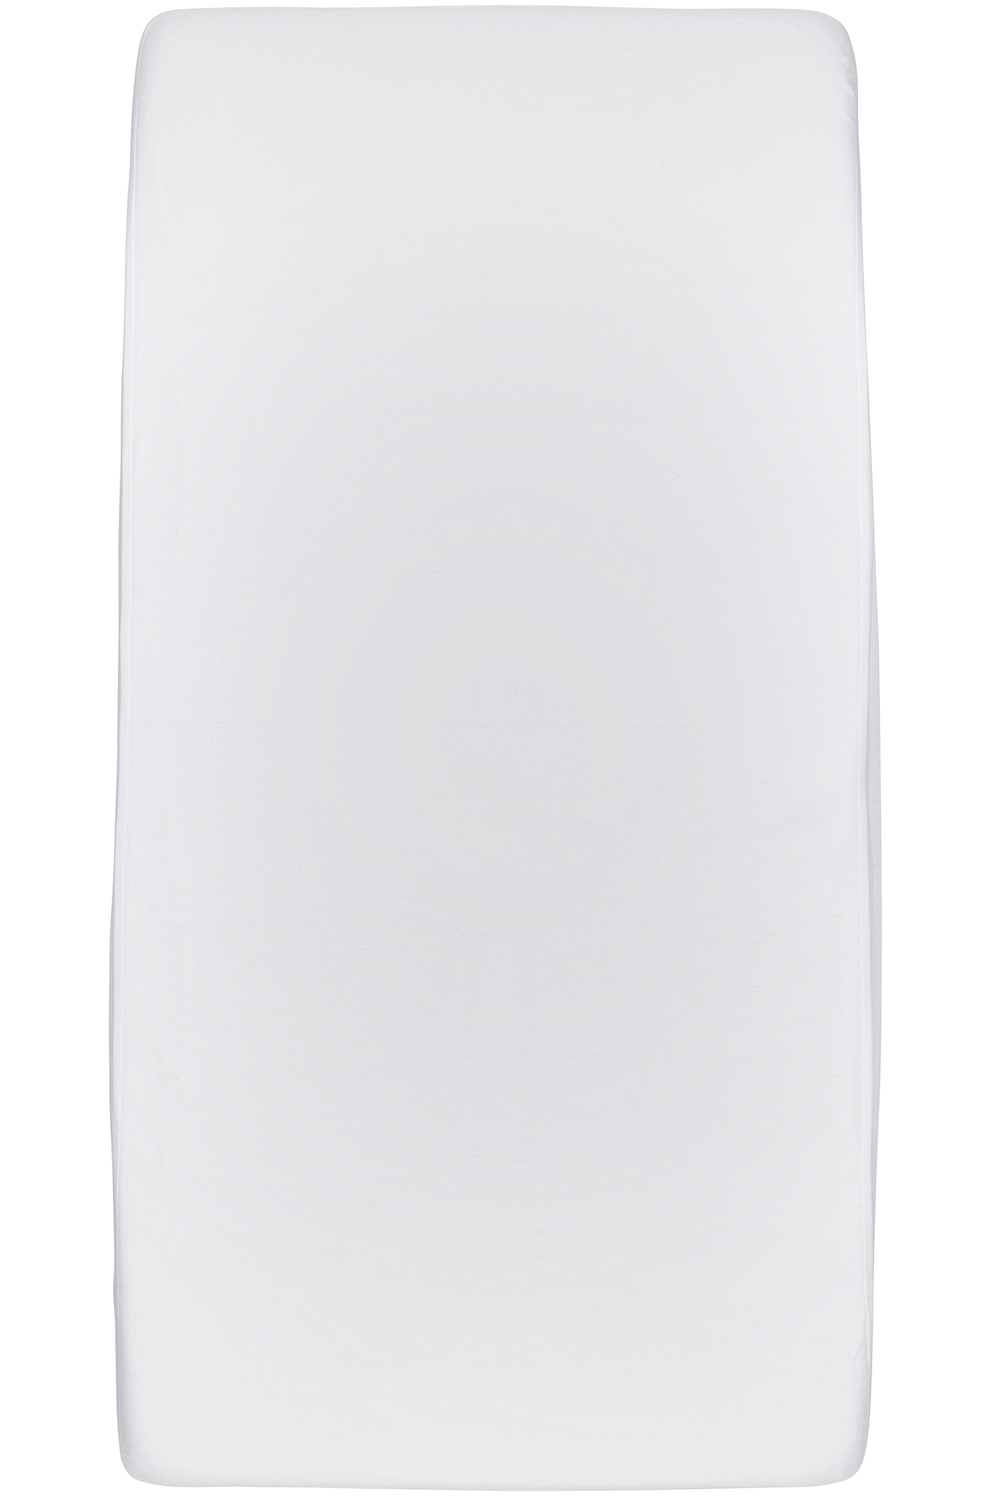 Waterdicht hoeslaken tweepersoons - white - 160x200cm